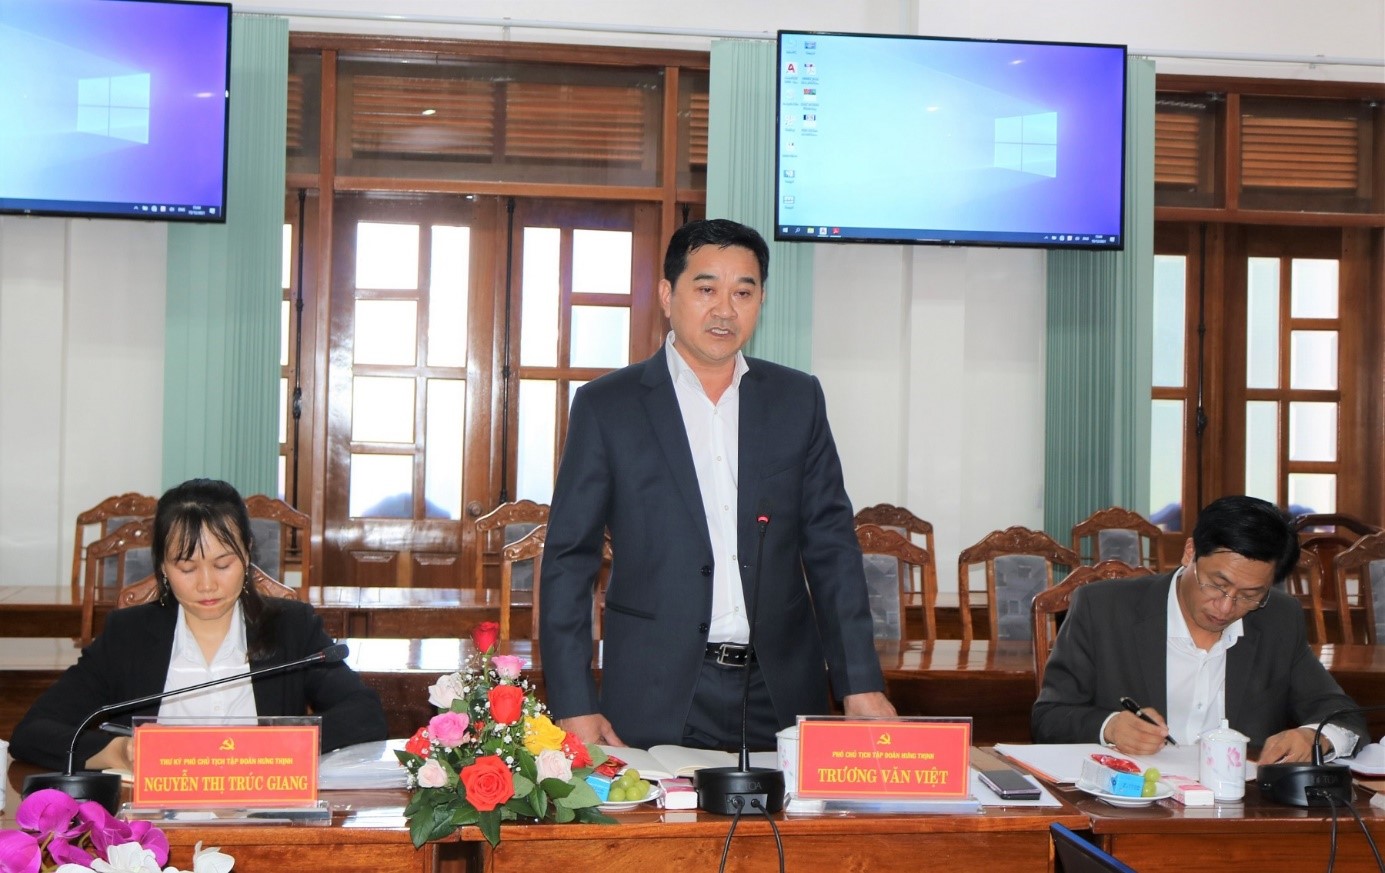 ông Trương Văn Việt - Phó Chủ tịch Tập đoàn Hưng Thịnh và các thành viên trong đoàn công tác thuộc Tập đoàn Hưng Thịnh